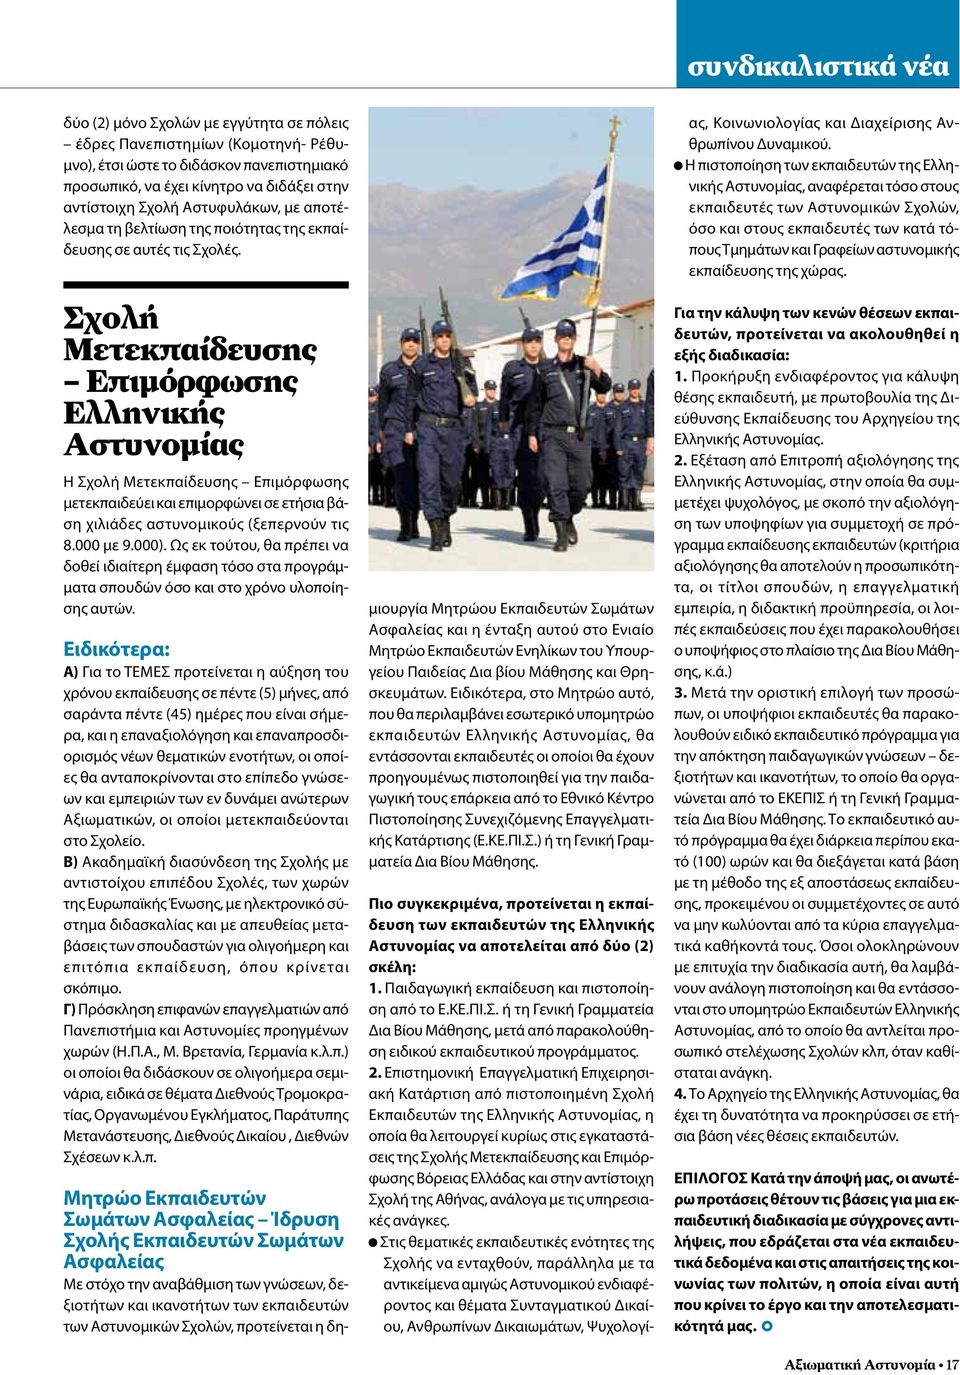 Σχολή Μετεκπαίδευσης Επιμόρφωσης Ελληνικής Αστυνομίας Η Σχολή Μετεκπαίδευσης Επιμόρφωσης μετεκπαιδεύει και επιμορφώνει σε ετήσια βάση χιλιάδες αστυνομικούς (ξεπερνούν τις 8.000 με 9.000).